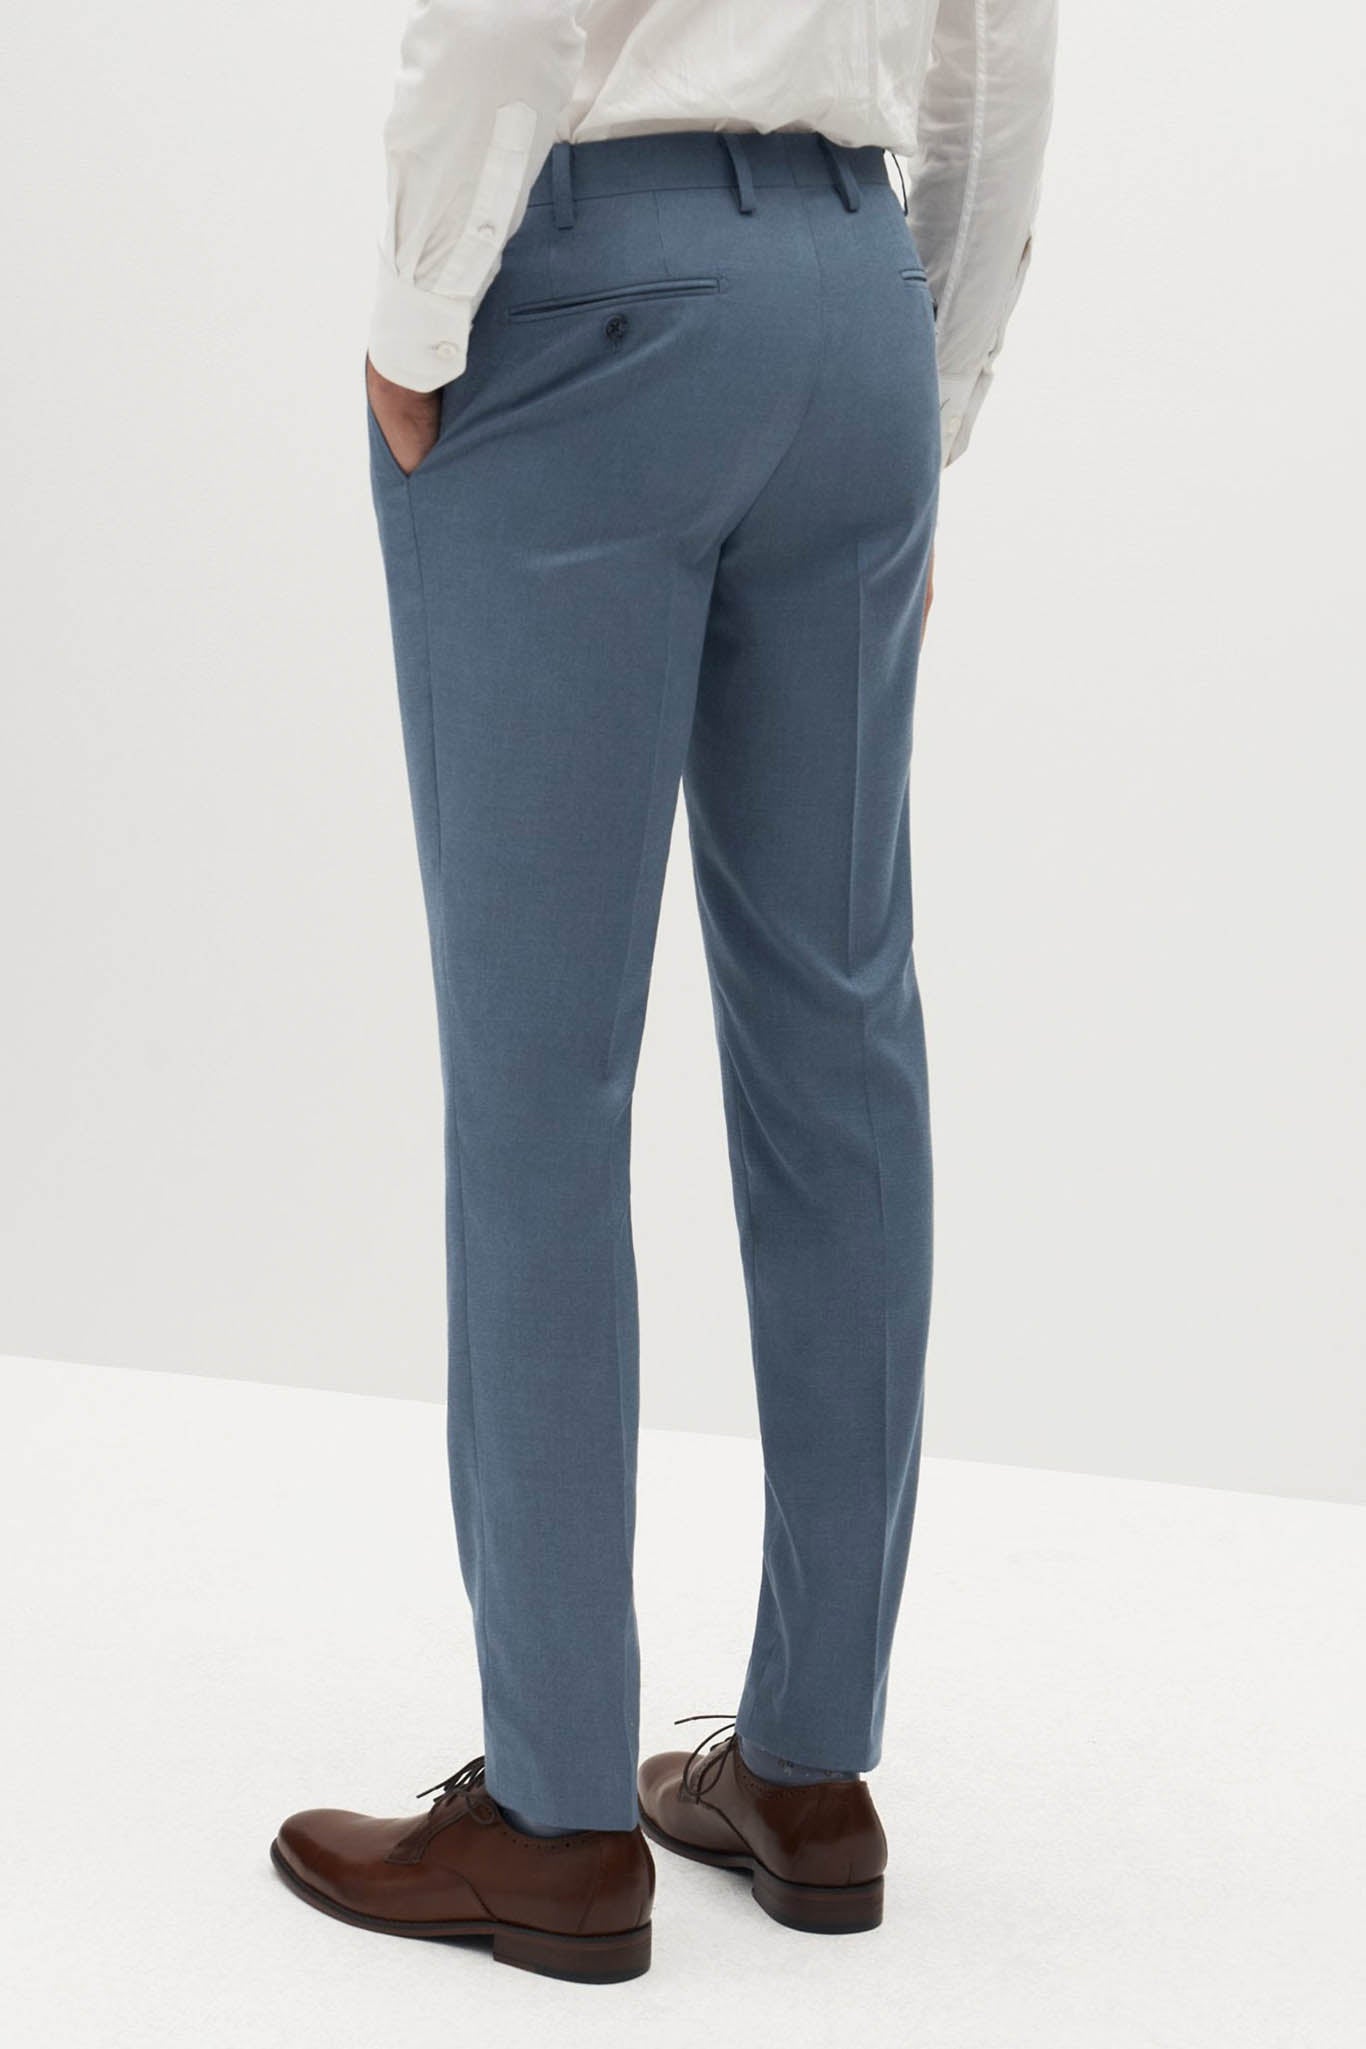 Light Blue Suit Pants by SuitShop